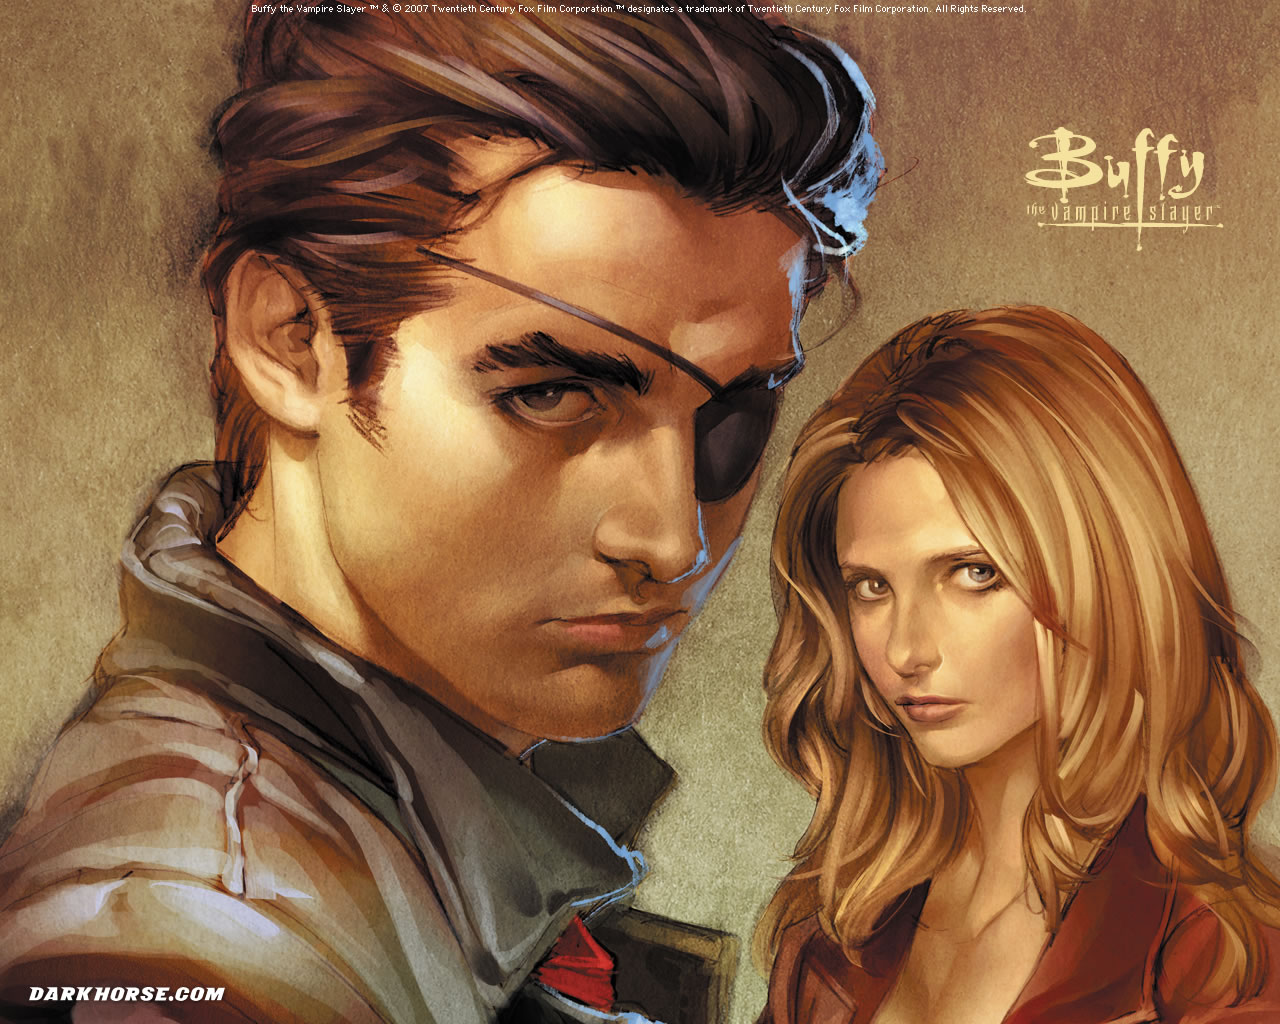 Melhores papéis de parede de Buffy A Caça Vampiros para tela do telefone